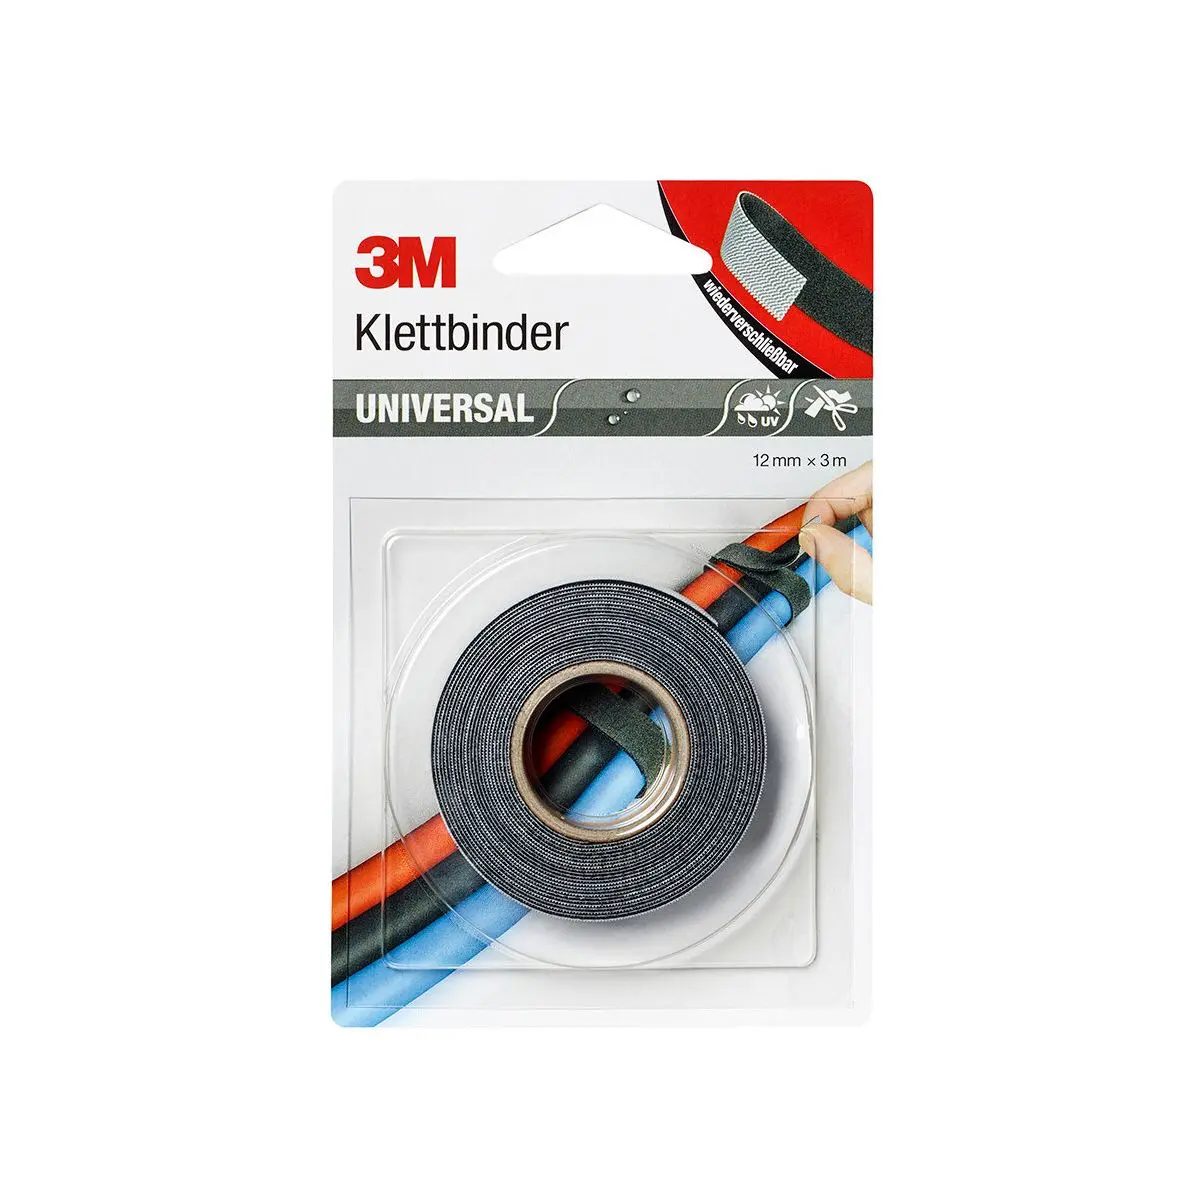 3M Universal Klettbinder - 300 x 1,2 cm